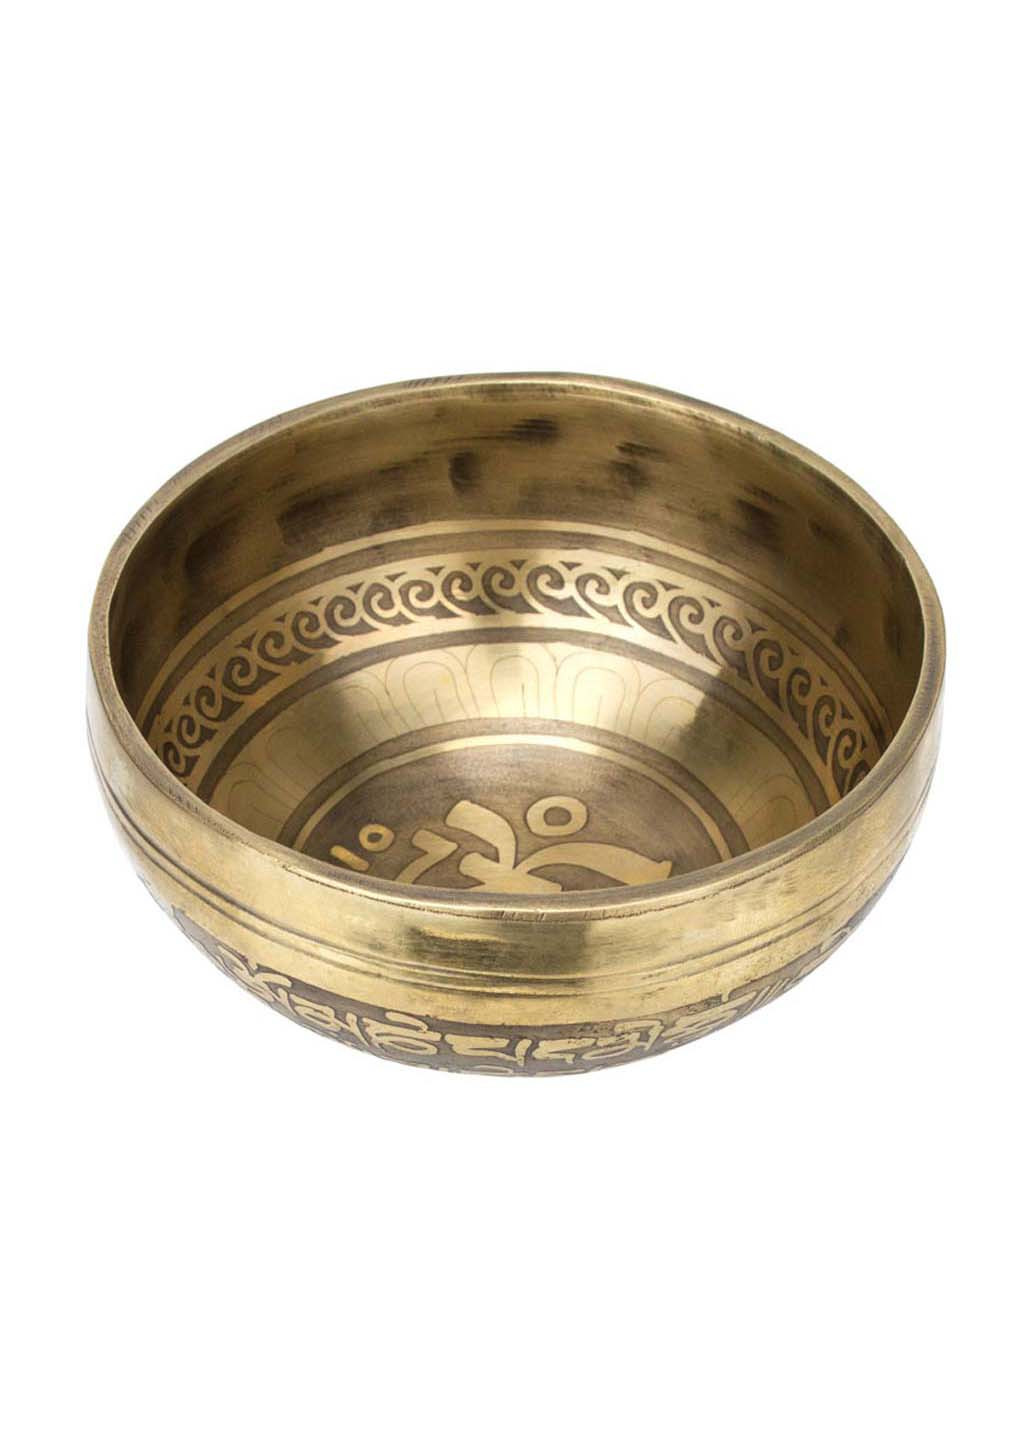 Тибетська чаша, що співає 11,2х11,2х5,5 см Singing bronze (255611194)